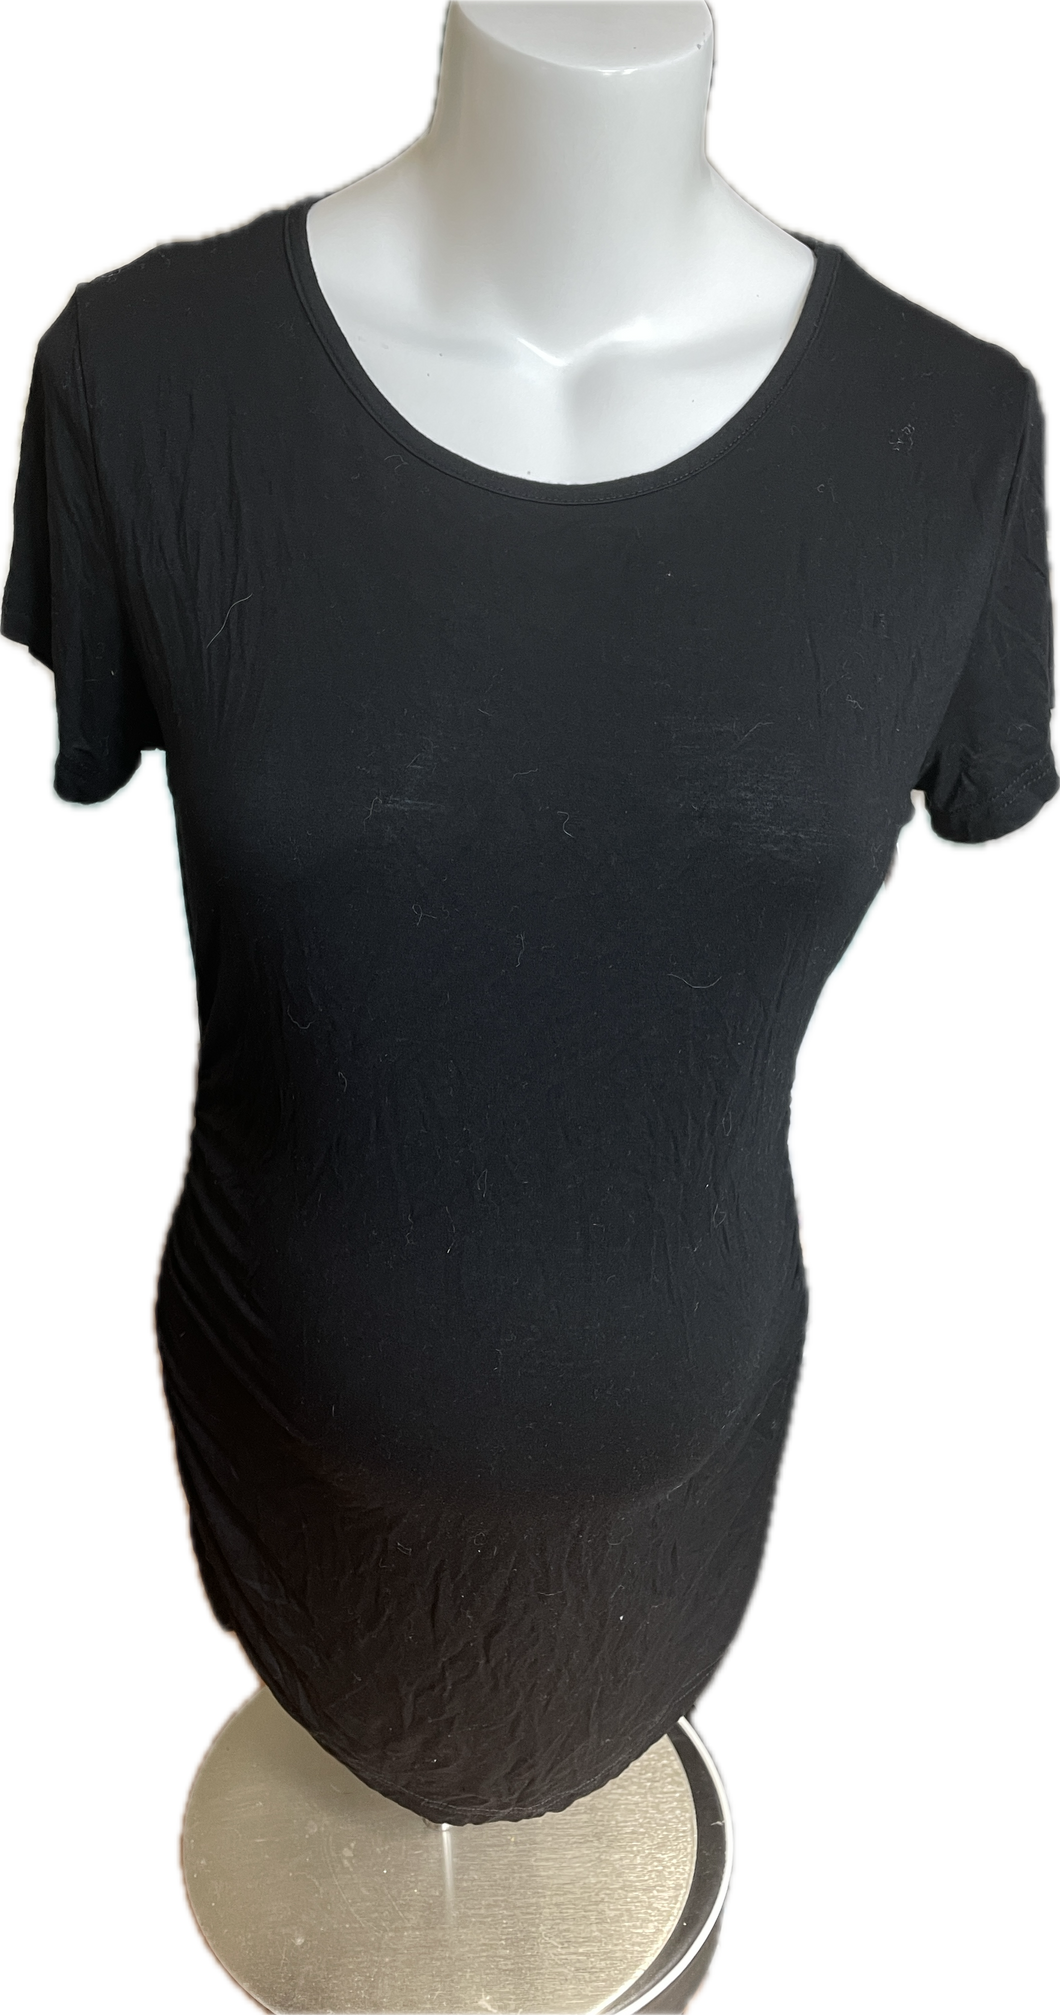 L Maternity T-shirt in Black